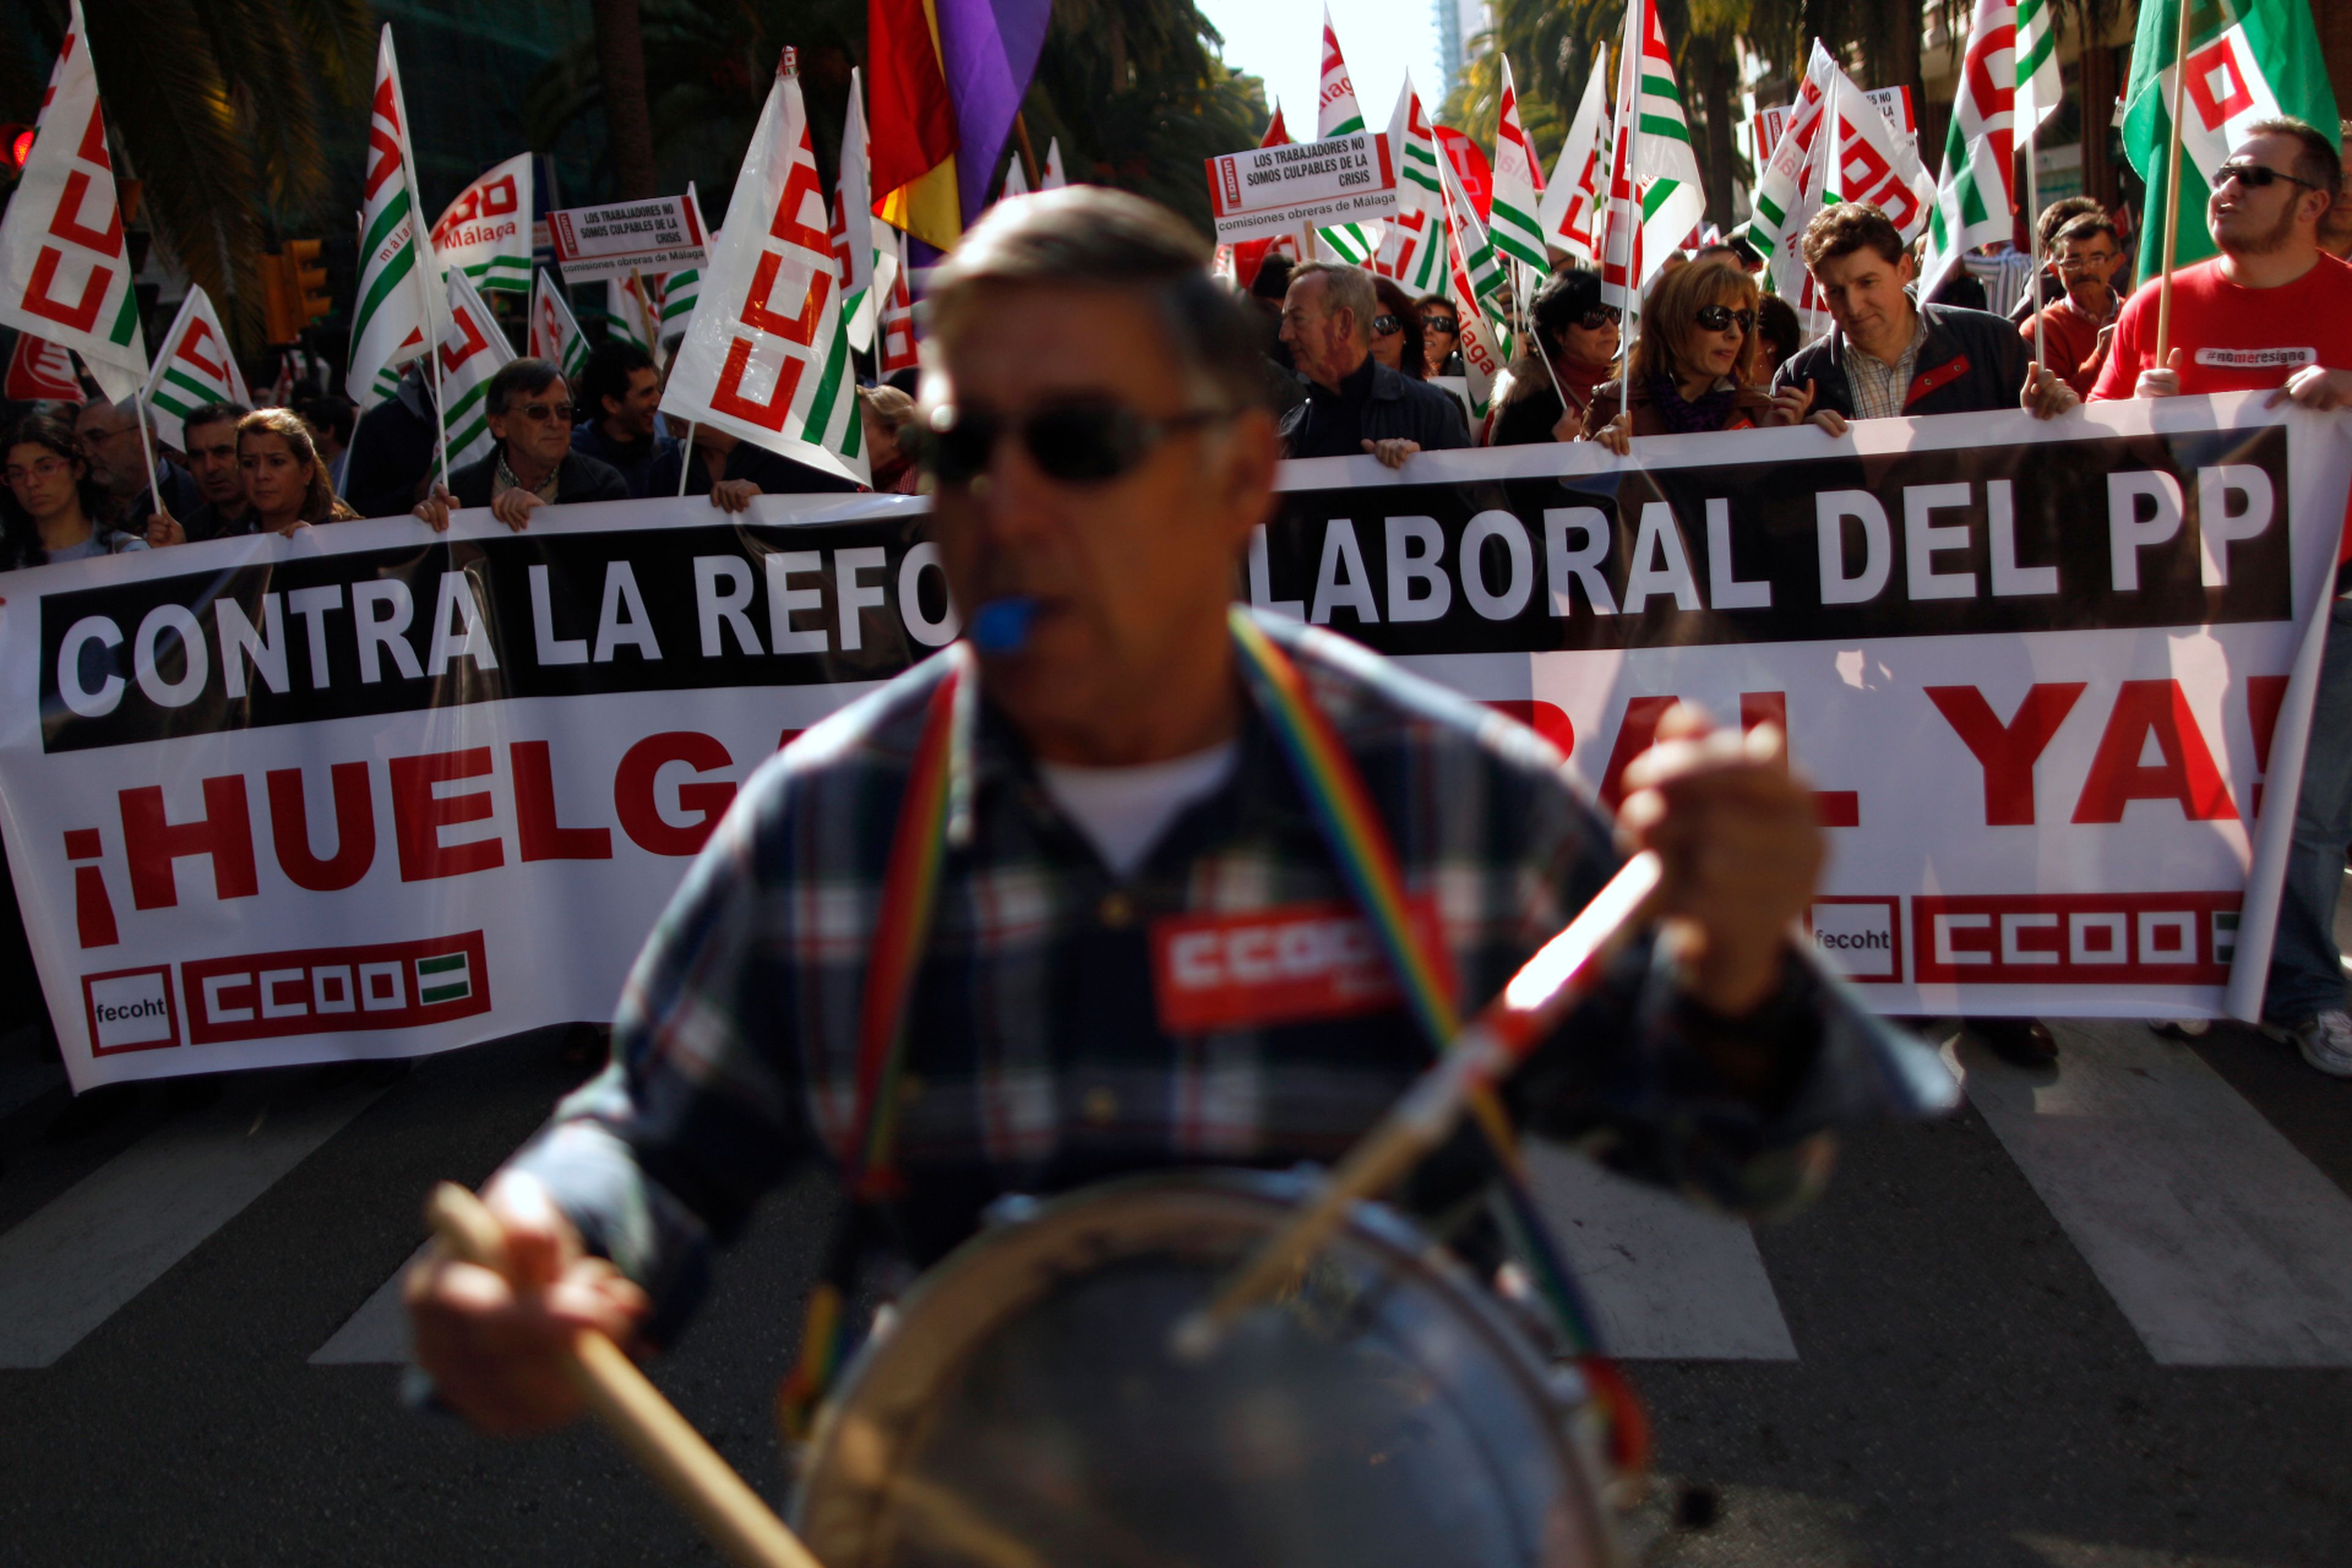 La cabecera de una manifestación contra la reforma laboral en Málaga